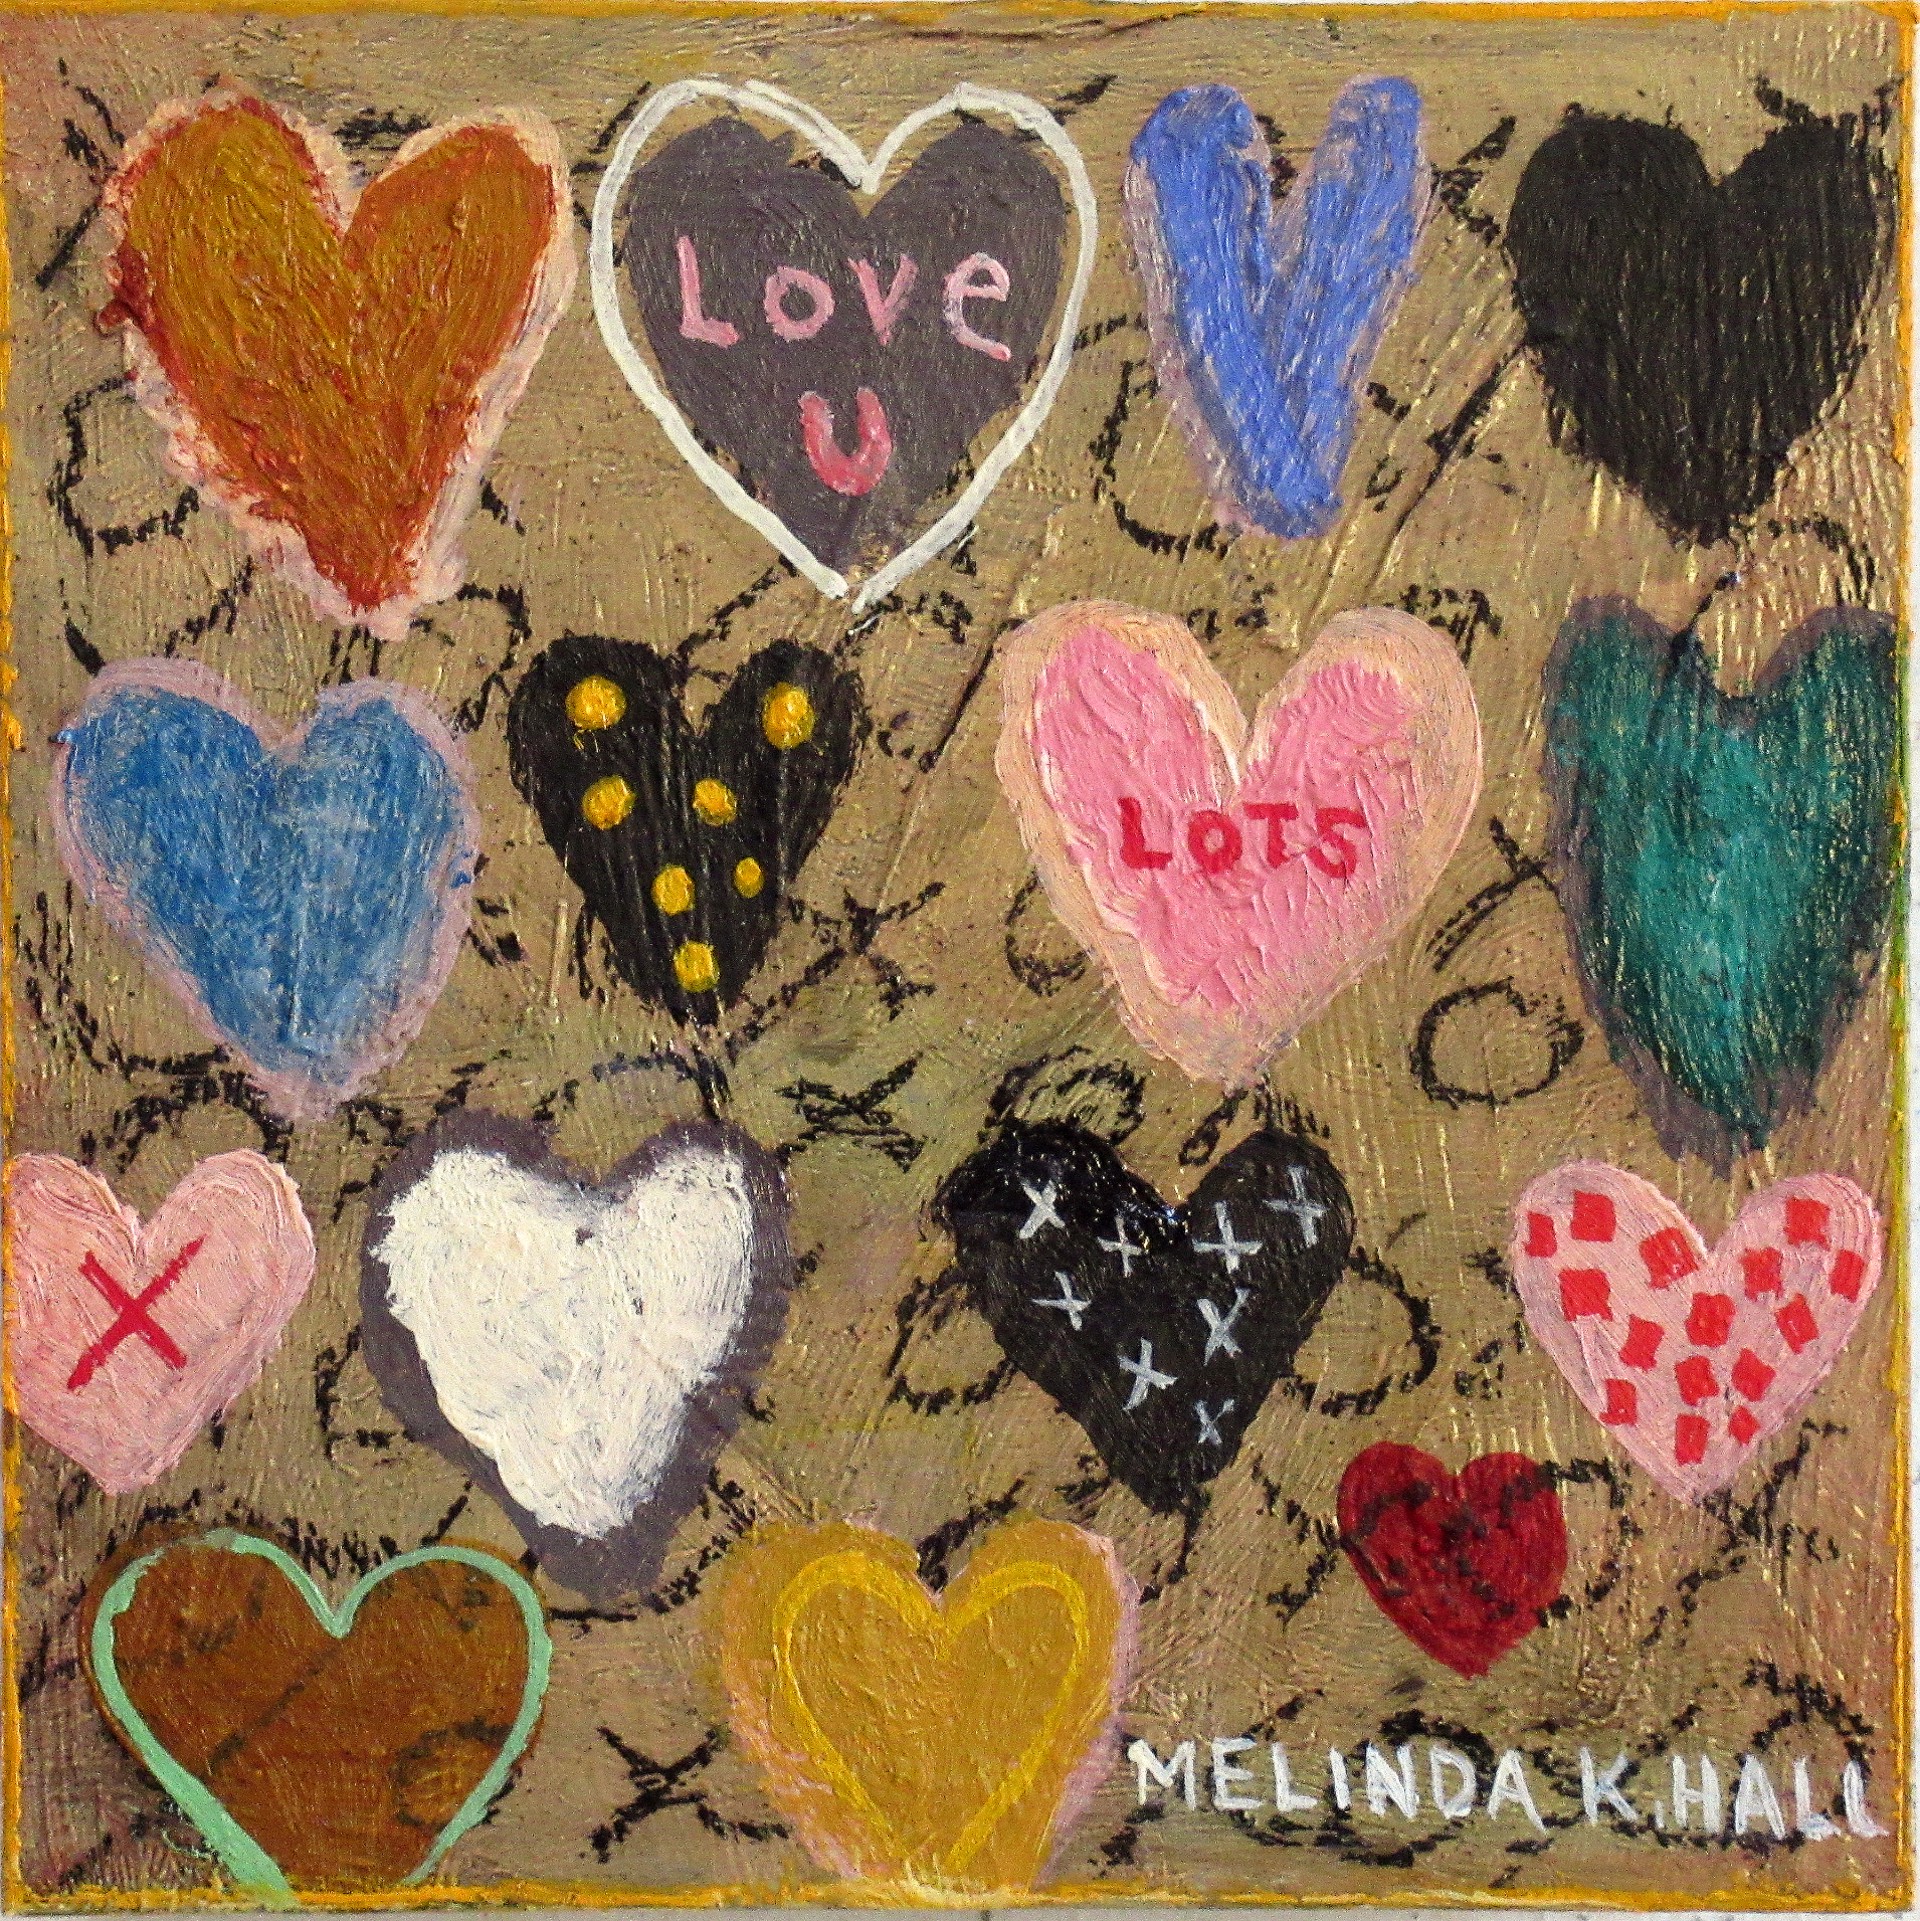 Love U Lots by Melinda K. Hall